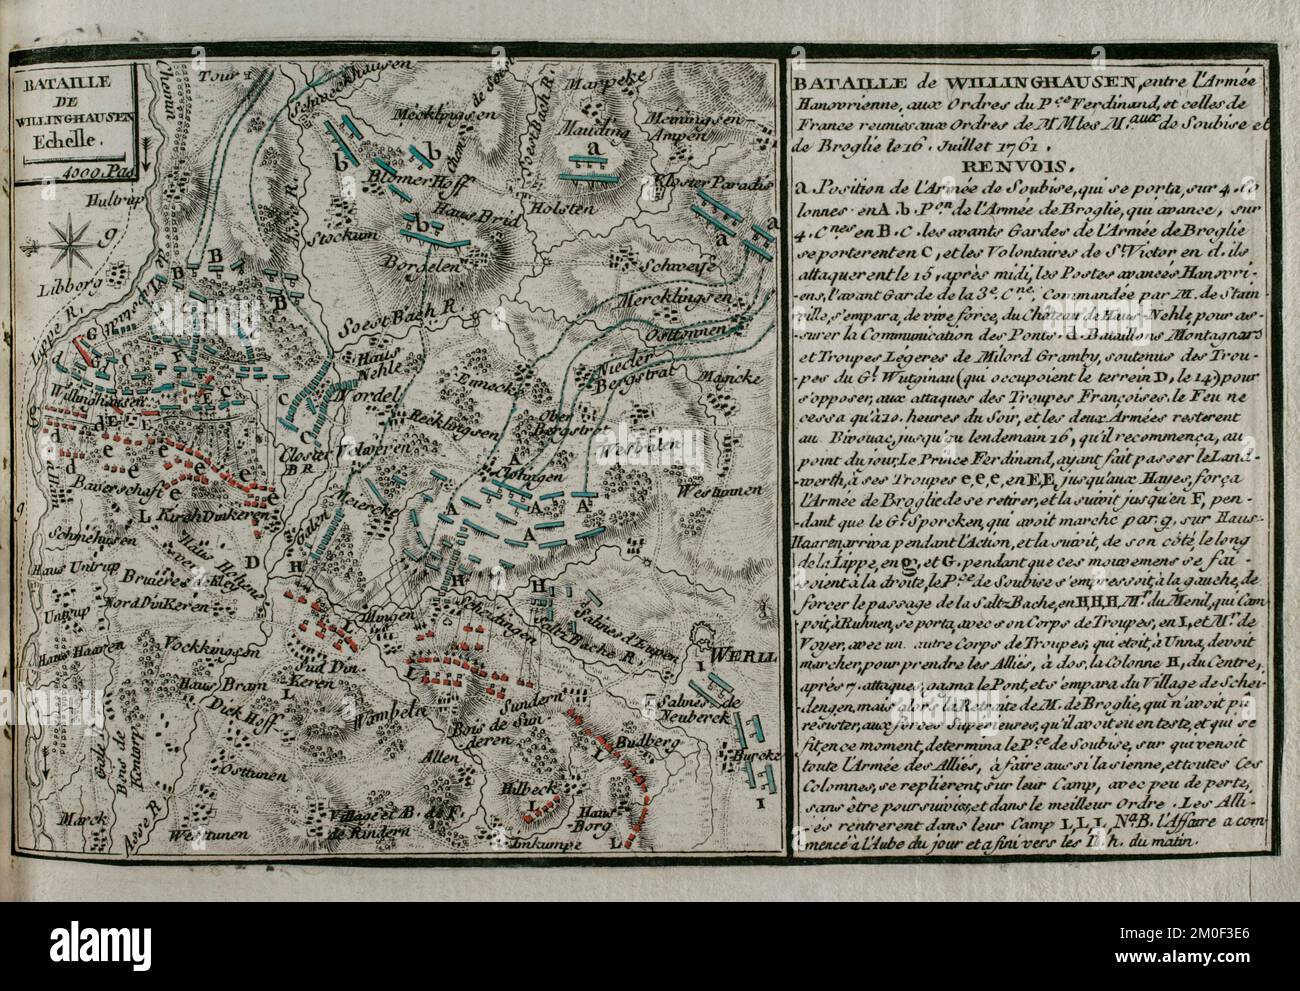 7 Jahre Krieg (1756-1763). Karte der Schlacht von Vellinghausen (15.-16. Juli 1761). Sie fand am Ufer der Lippe in Nordwestdeutschland statt. Er stellte sich der von Prinz Ferdinand von Brunswick angeführten preußisch-hanoverisch-britischen Armee gegen die französische Armee unter dem Kommando des Duc de Broglie und des Prinzen Soubise. Die französische Truppe musste sich zurückziehen. Veröffentlicht im Jahr 1765 vom Kartografen Jean de Beaurain (1696-1771) als Illustration seiner Großen Karte Deutschlands mit den Ereignissen, die während des Siebenjährigen Krieges stattfanden. Alliierte Armee in Rot und französische Armee in Blau. Ätzen und Stockfoto